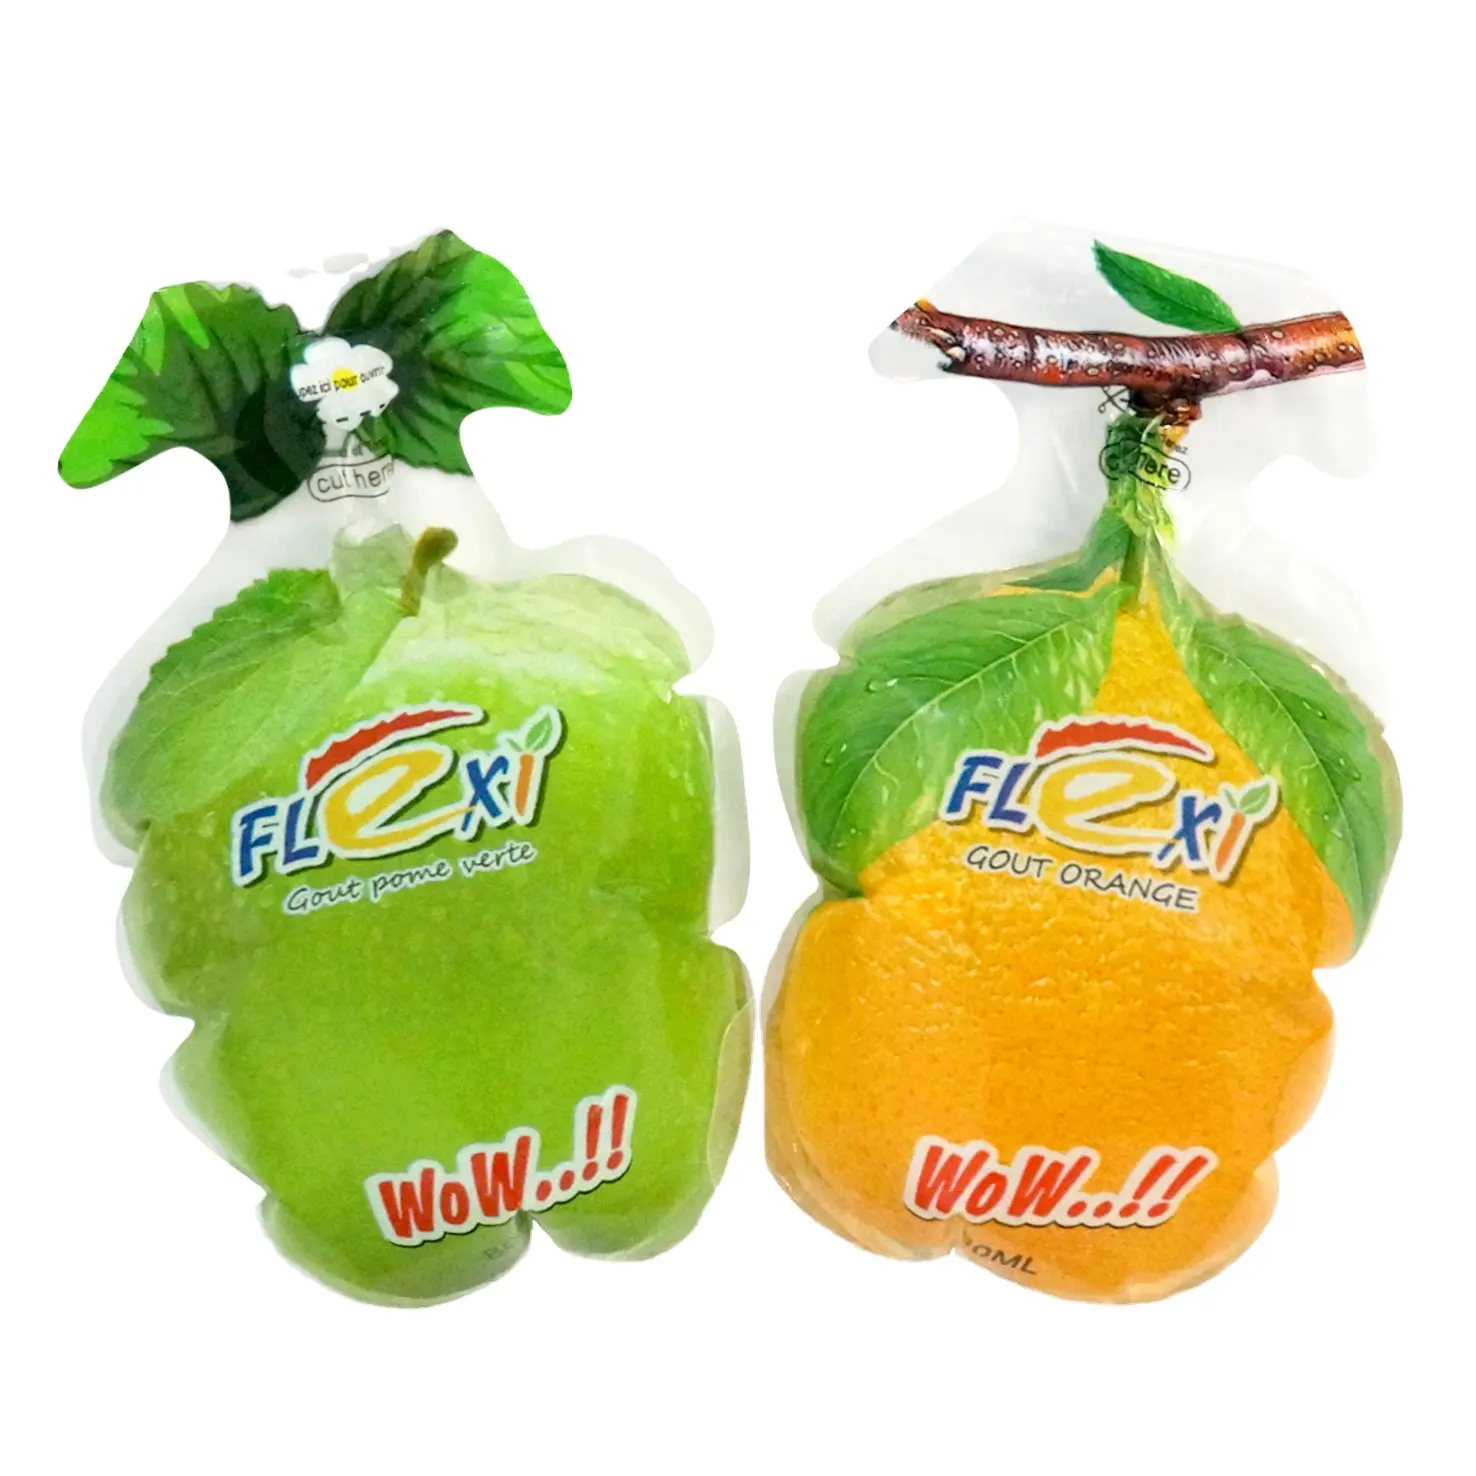 DQPACKインジェクションフルーツジュースポーチ冷凍食品プラスチックボトル型ゼリーその他の包装製品包装袋